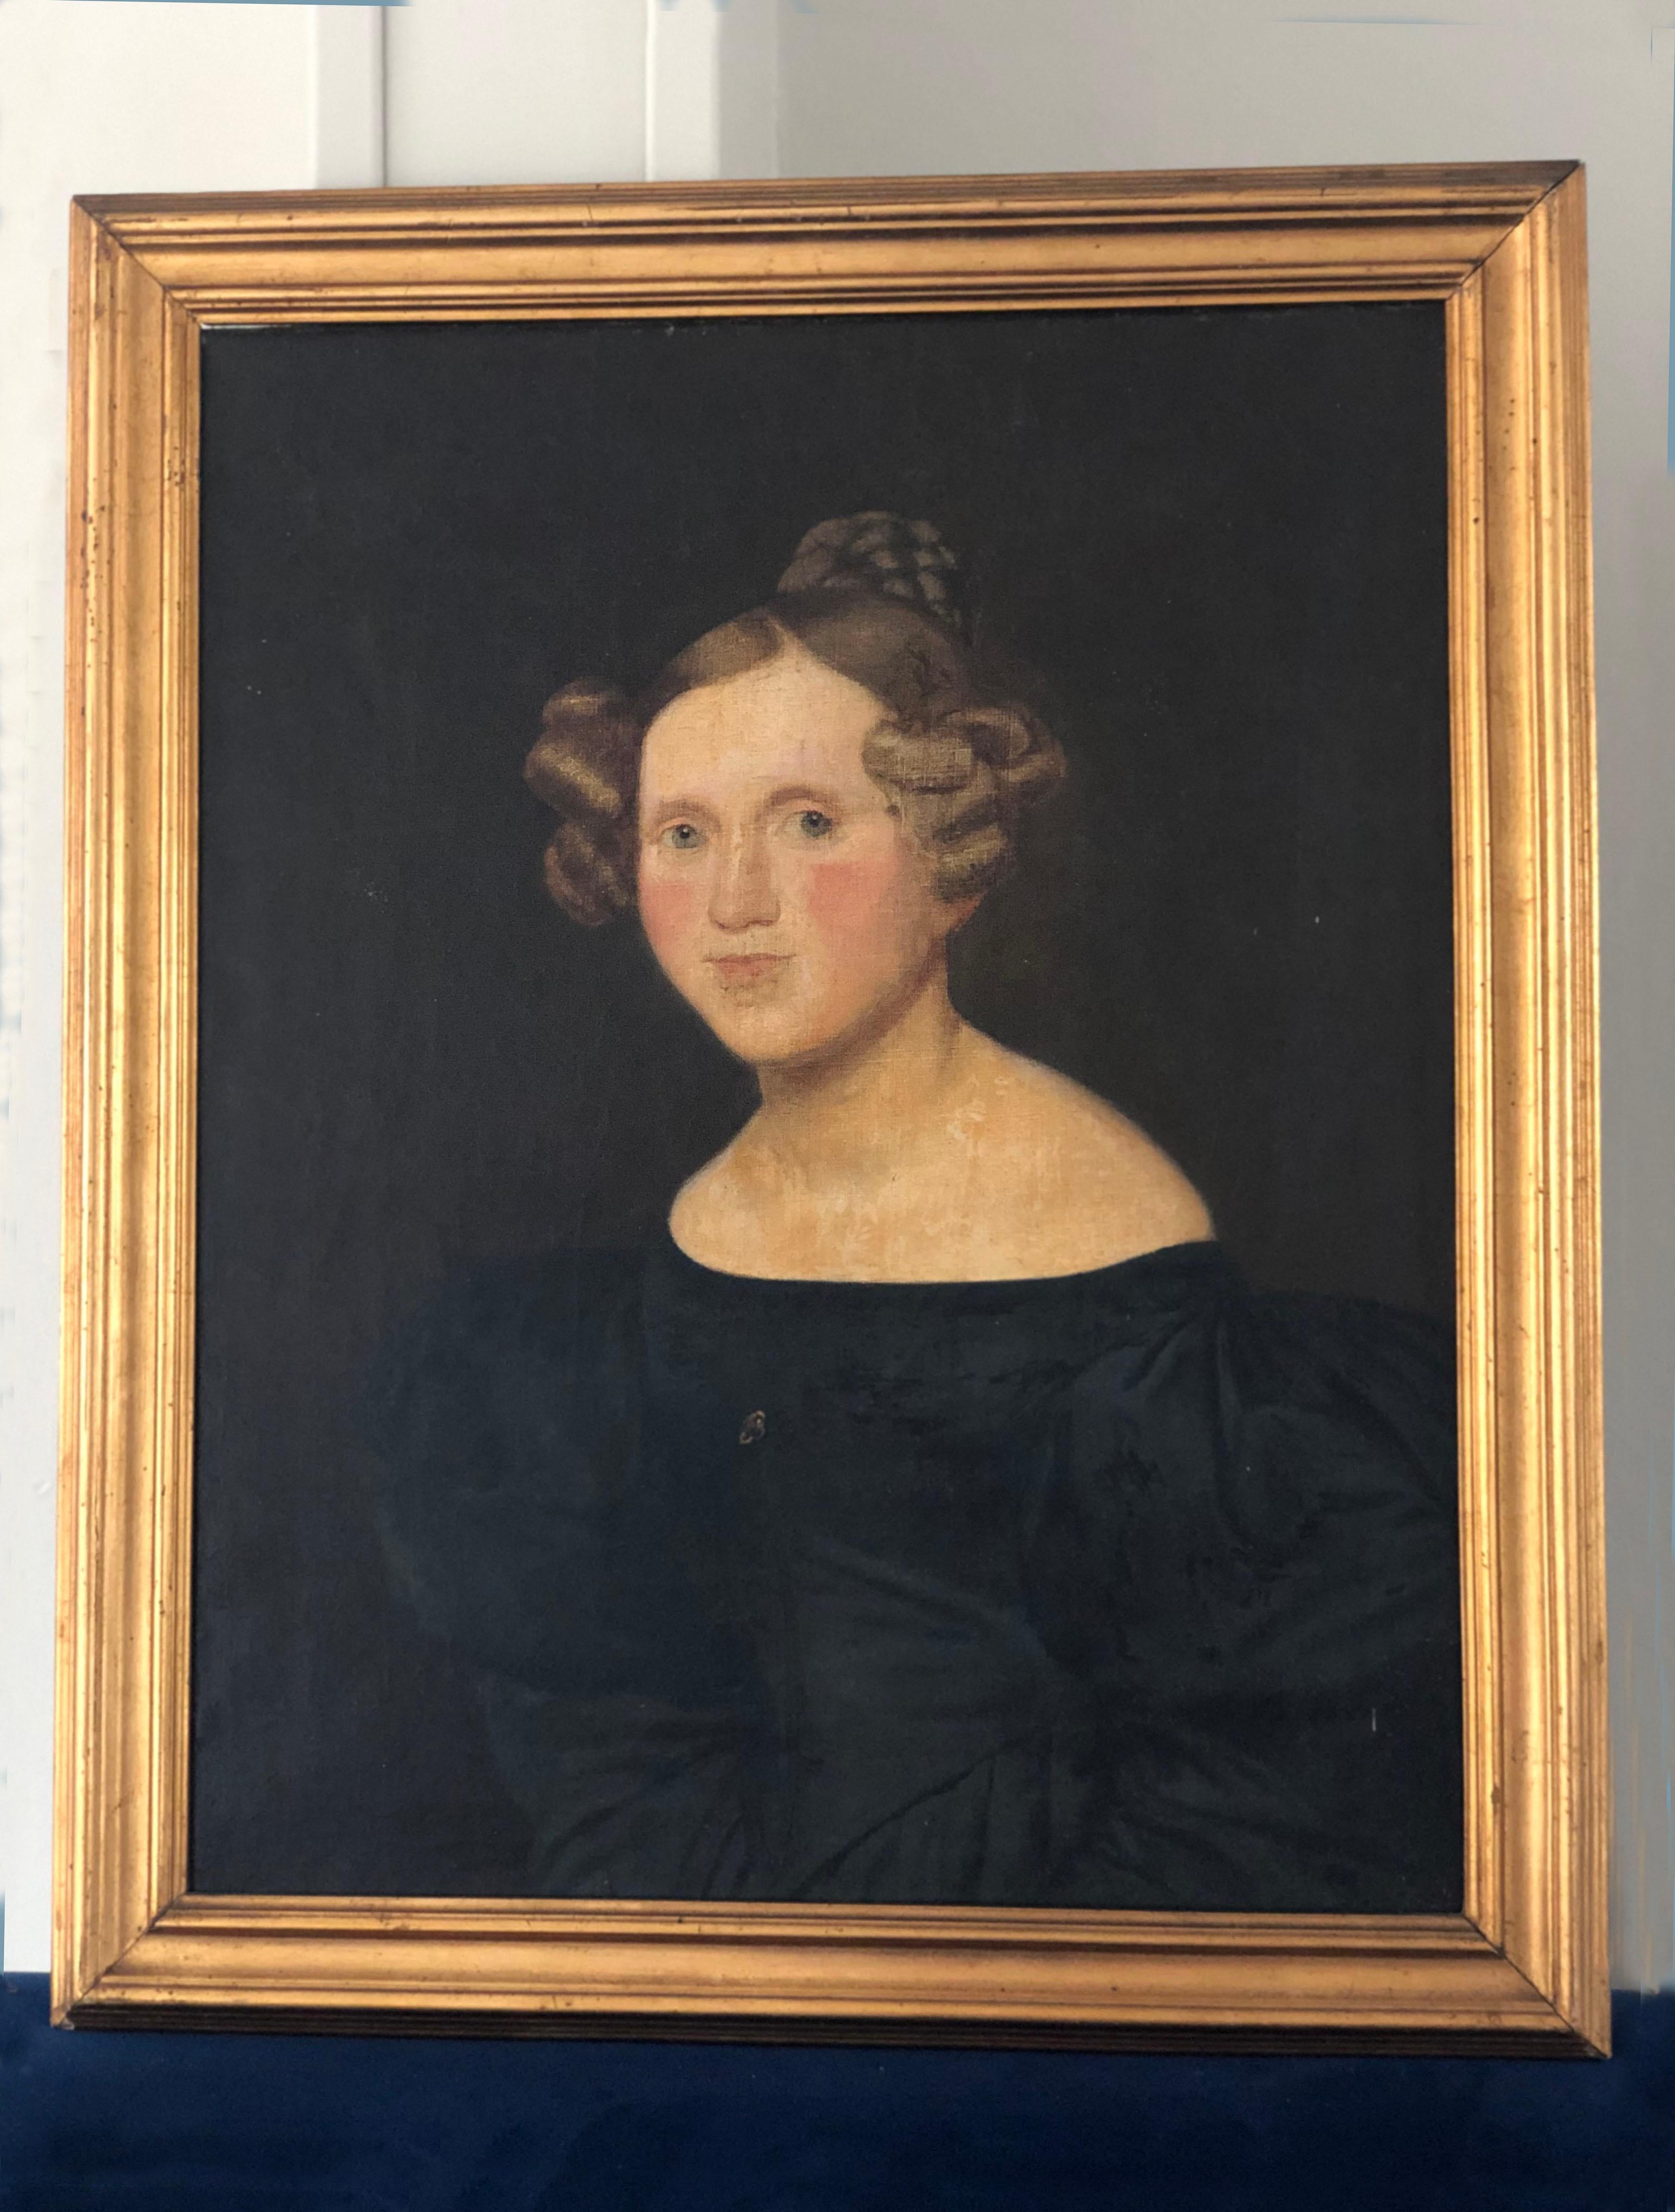 Cette peinture à l'huile capture l'essence d'une femme danoise distinguée du début du 19e siècle. Le tableau a un beau fond sombre qui fait ressortir le cadre doré. 
Au dos du cadre, plusieurs noms et dates sont inscrits. Dans le cas d'un tableau du